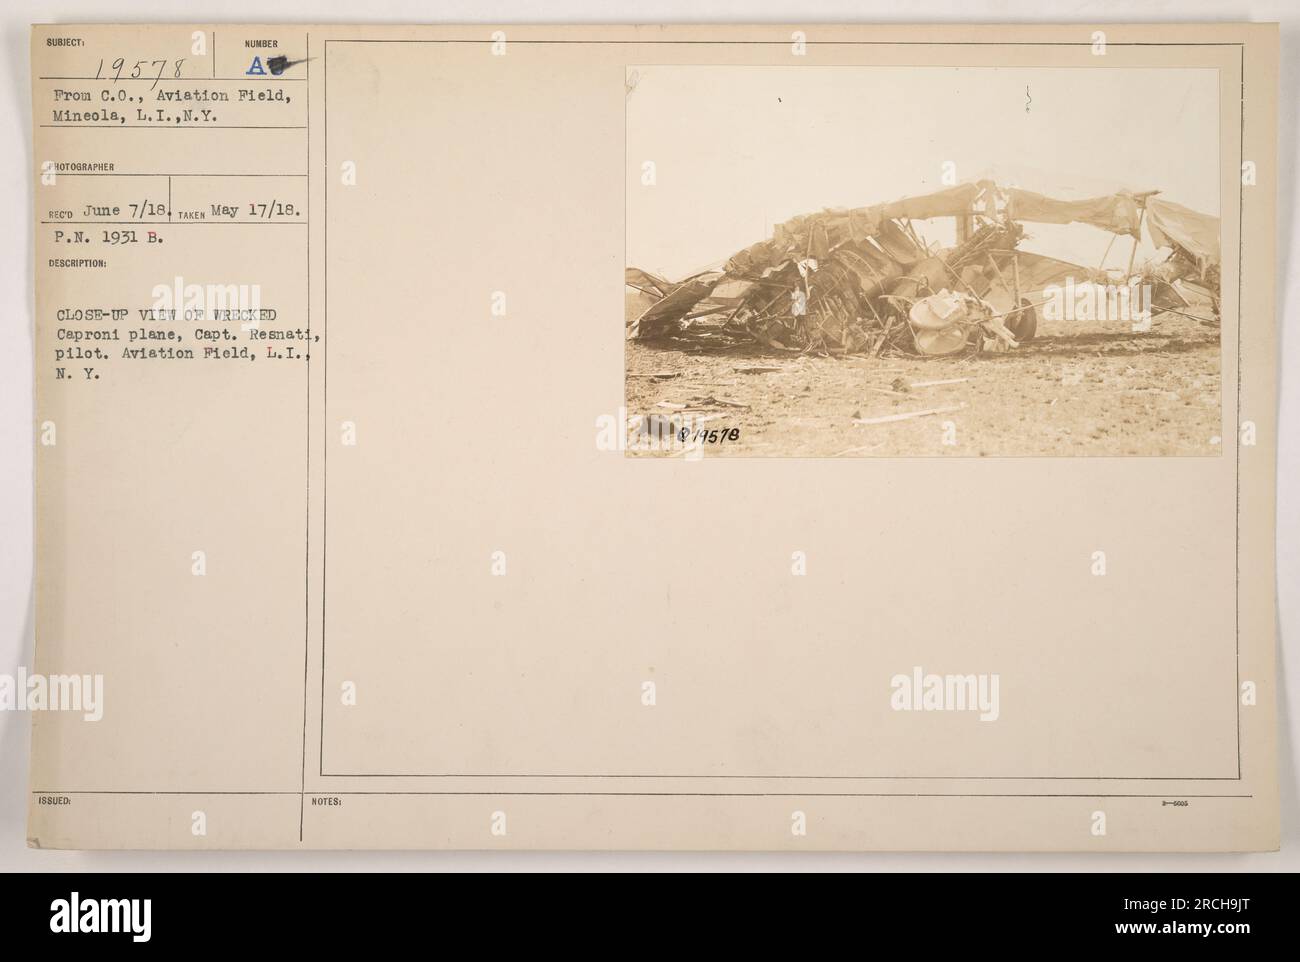 Nahaufnahme eines zerstörten Caproni-Flugzeugs auf dem Flugfeld in Mineola, L.I., N.Y. Das Foto wurde am 17. Mai 1918 aufgenommen und am 7. Juni 1918 ausgestellt. Das Flugzeug wurde von Captain Resnati gesteuert. Dieses Bild ist in der Fotografen-Sammlung mit Nummer 19578 beschriftet. Stockfoto